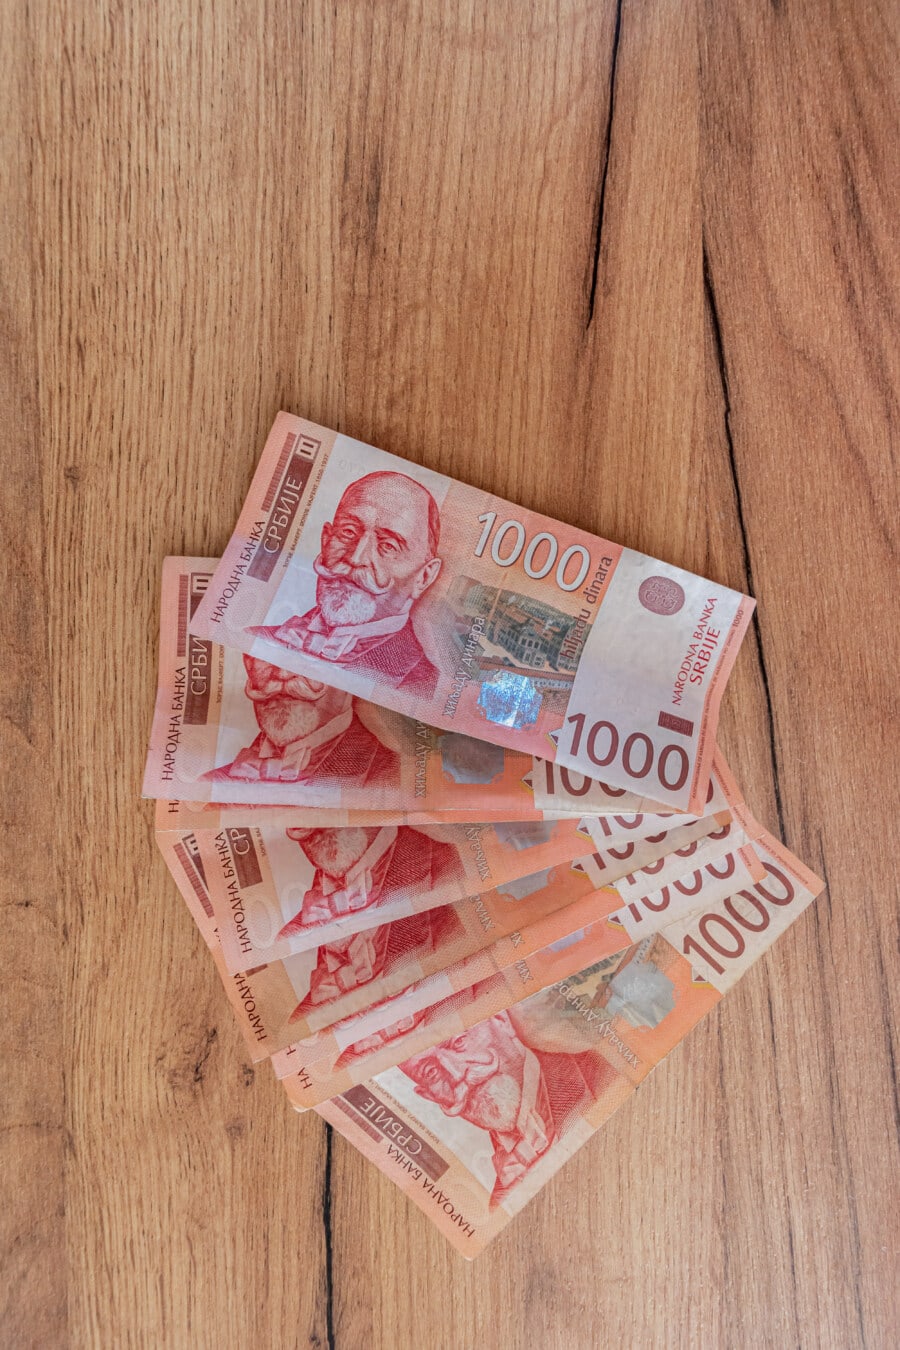 Σερβικό δηνάριο, χαρτονόμισμα, τραπεζογραμμάτιο, Σερβία, χρήματα, μετρητά, χαρτί, νόμισμα, οικονομικών, εξοικονόμηση